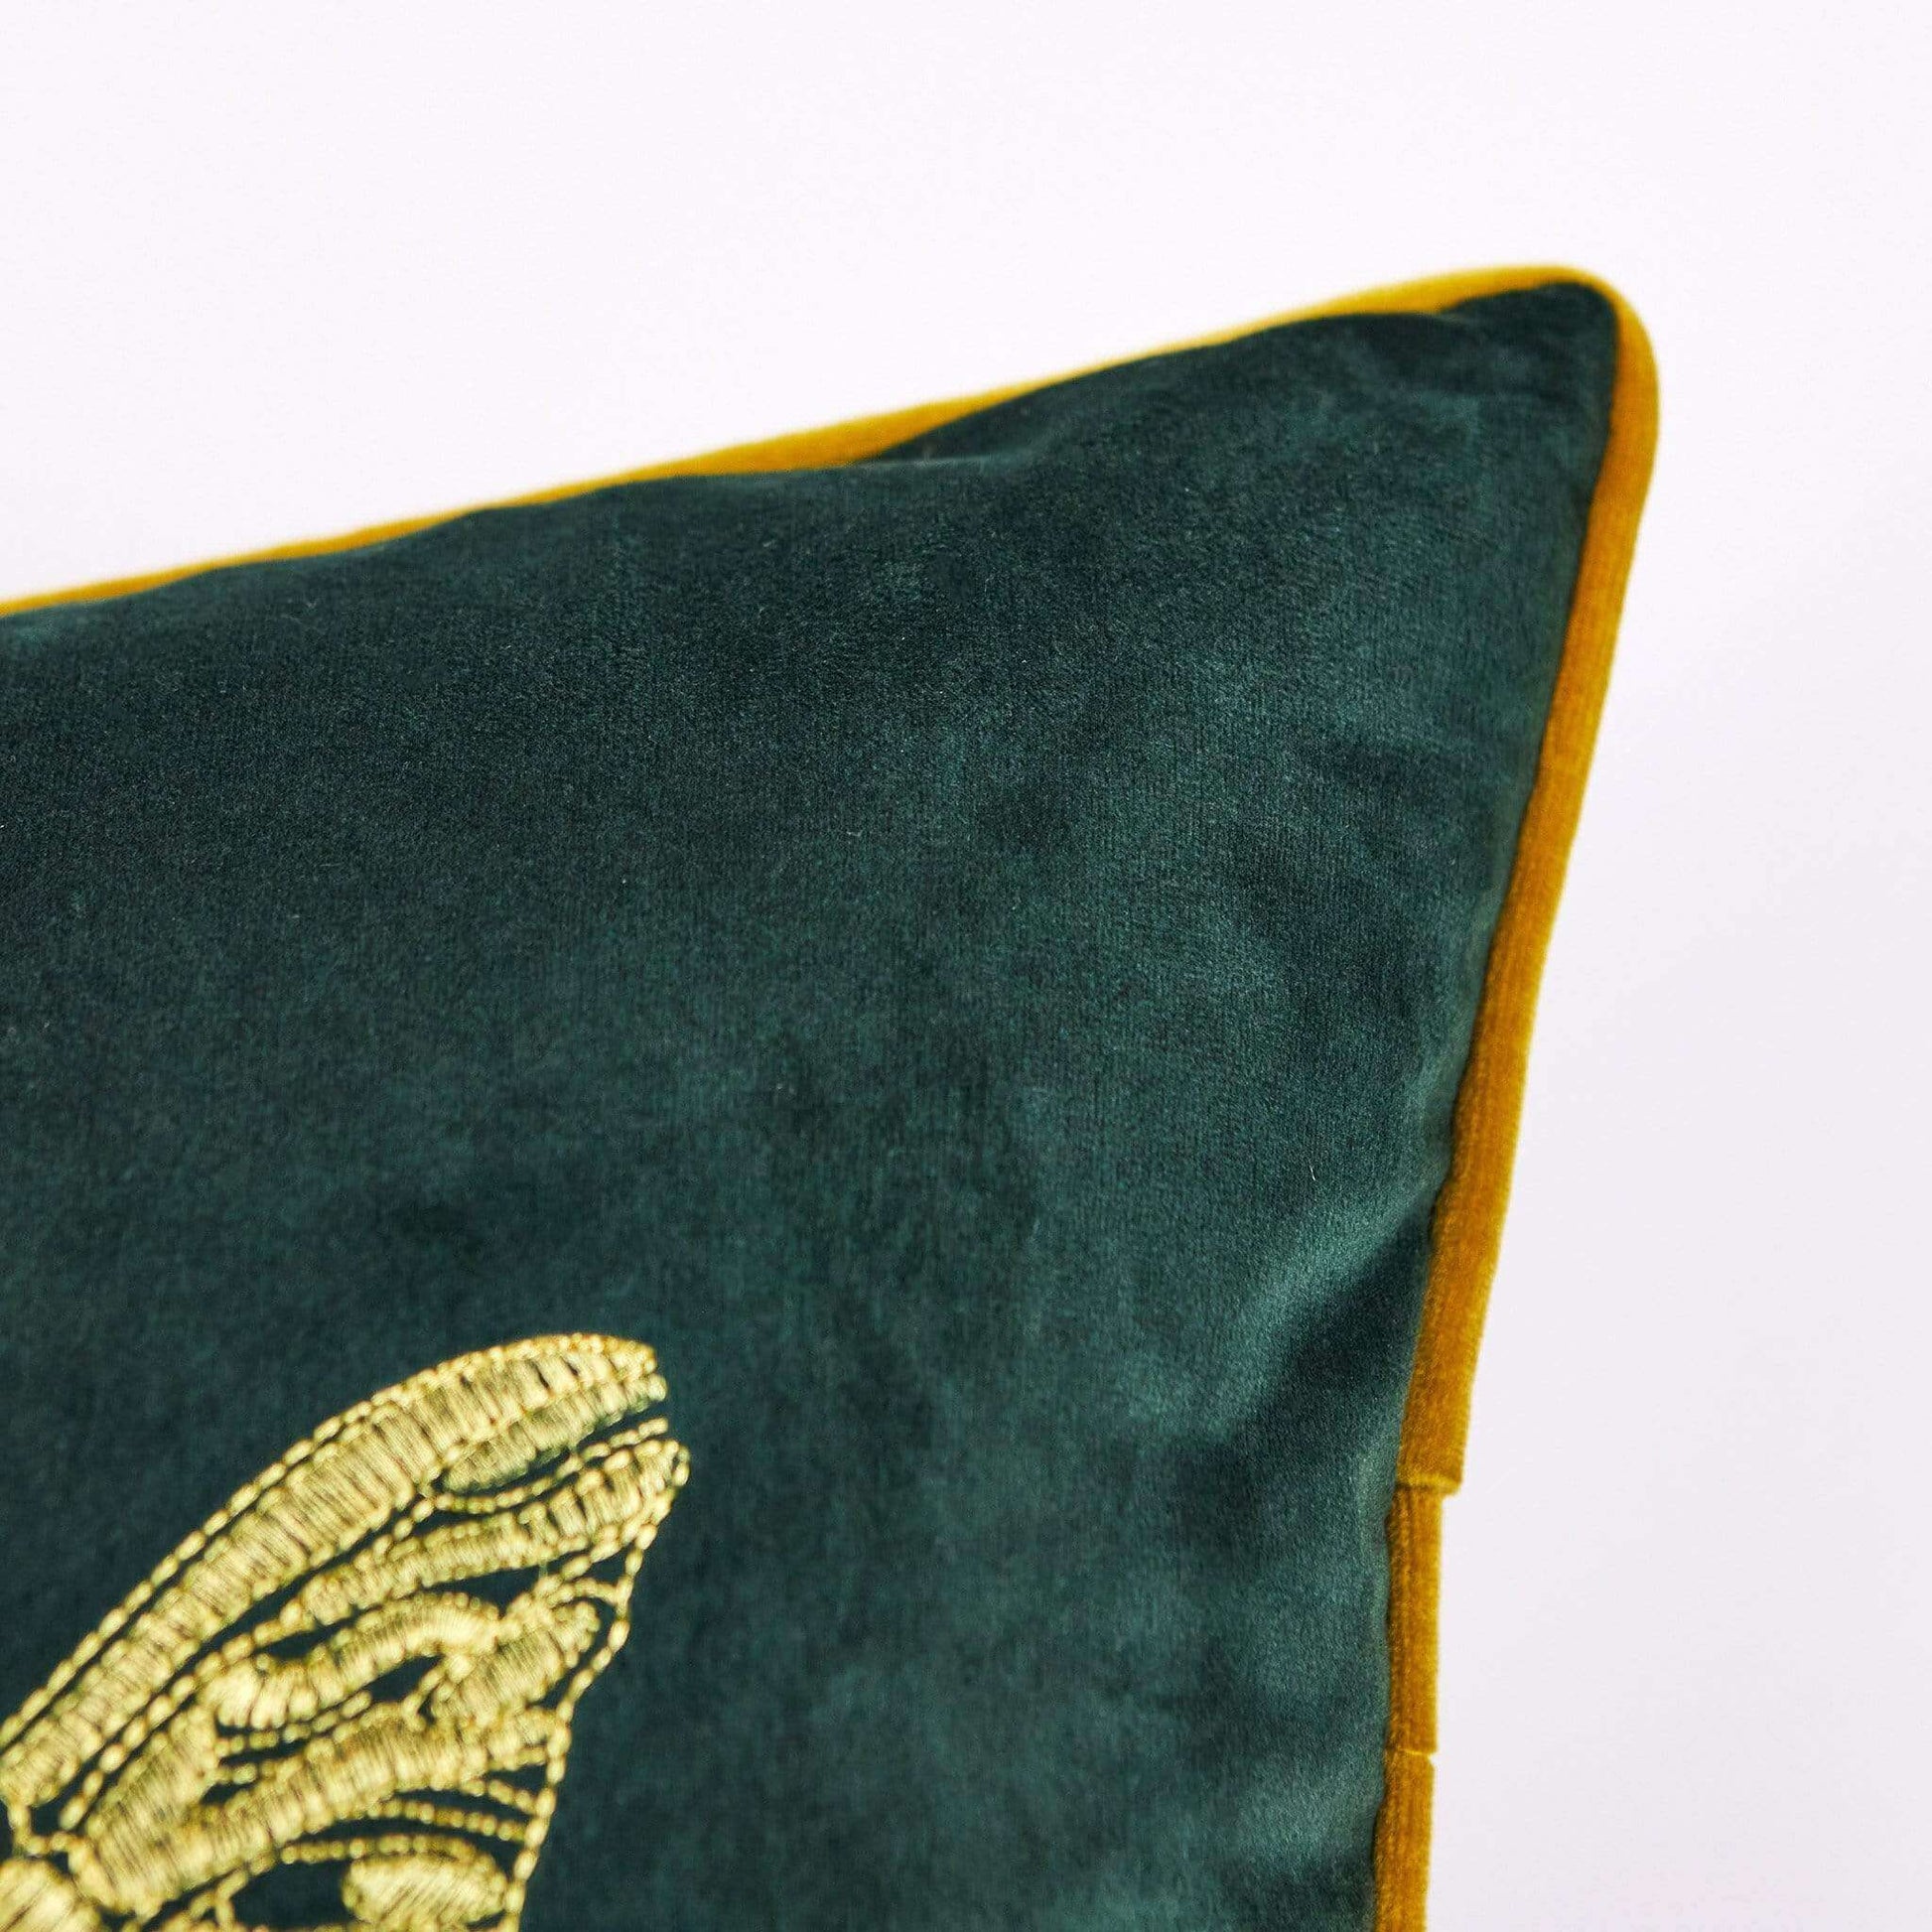 Homeware  -  Cerana Emerald Velvet Bumble Bee Cushion  -  50148010